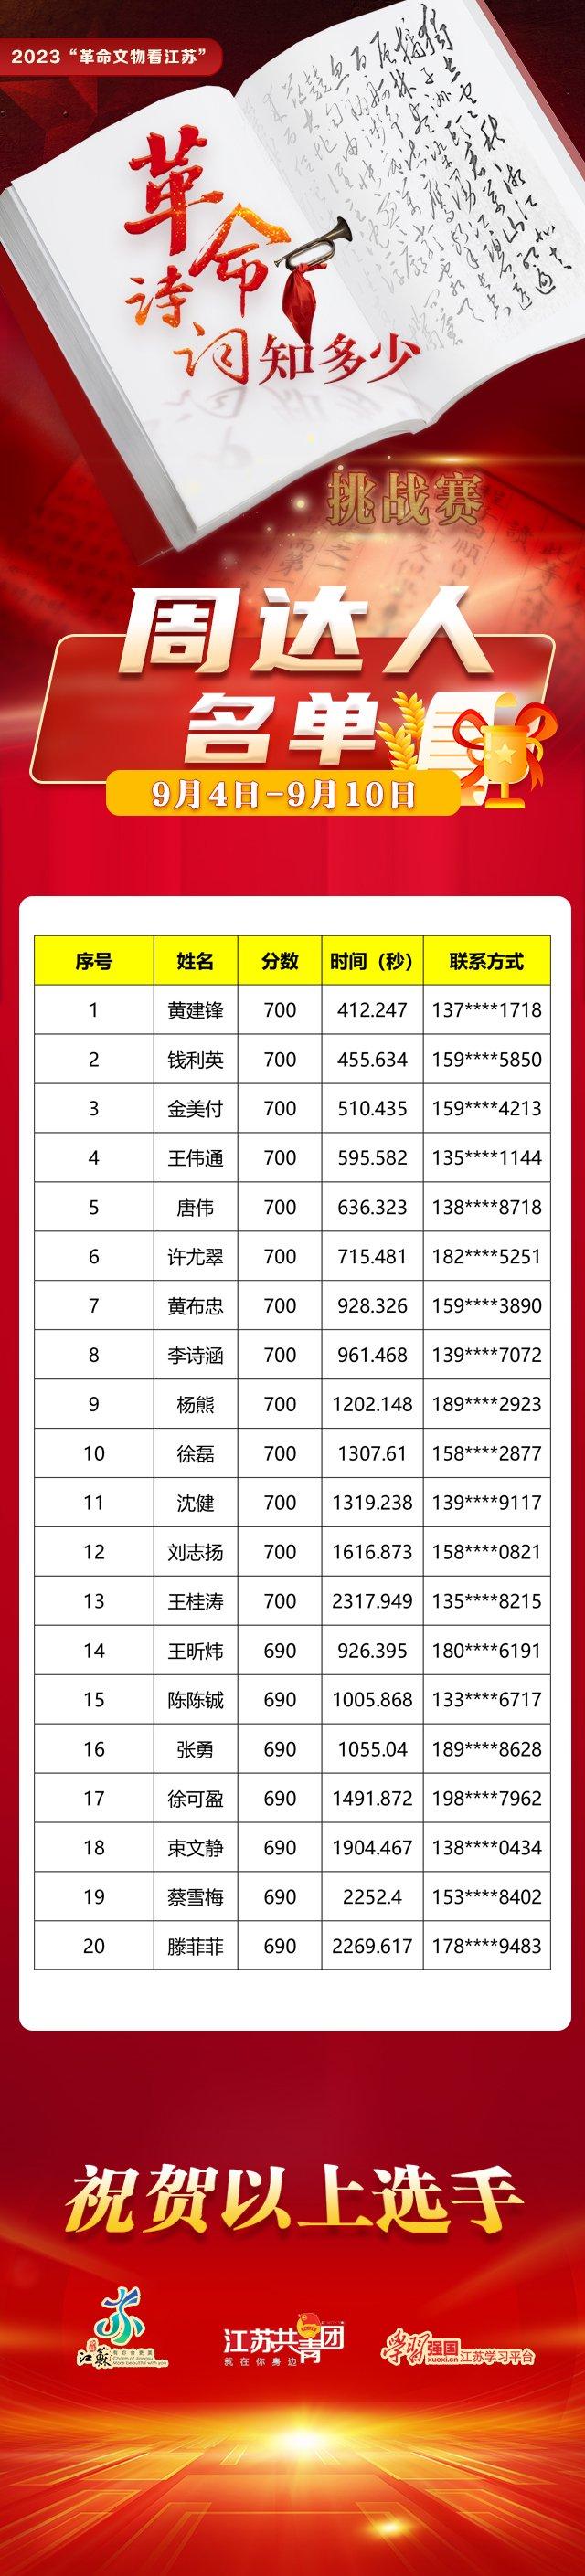 2023“革命文物看江苏——革命诗词知多少”挑战赛活动周达人名单（8月28日-9月30日）公布啦！